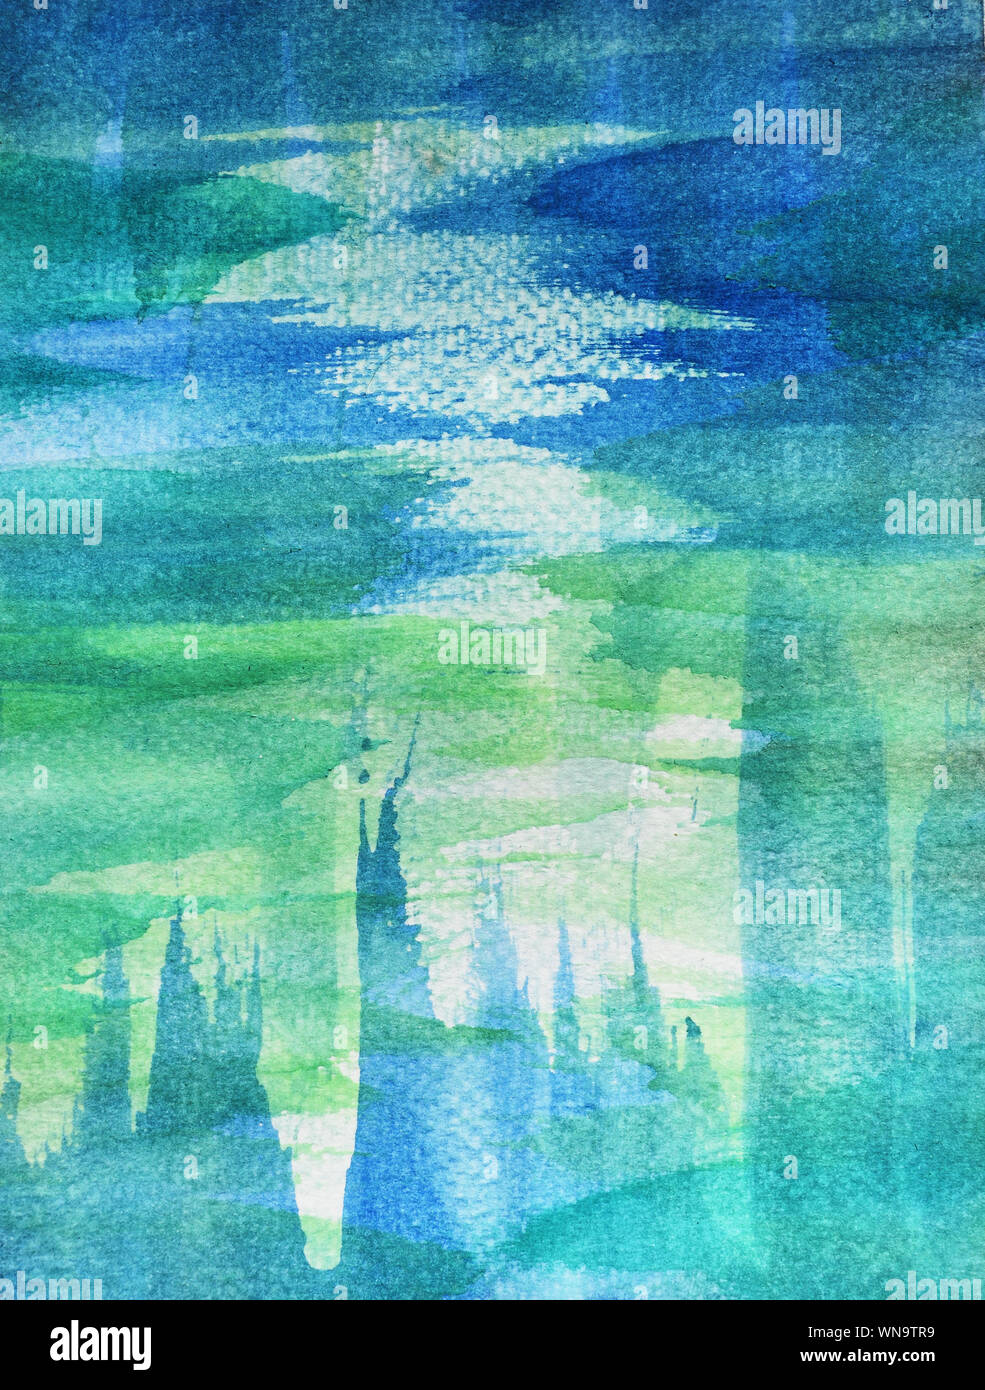 Blau mit grüner Farbe Flecken auf weiße Oberfläche, Illustration abstrakt und hellen Hintergrund von Hand zeichnen Aquarell auf Papier Stockfoto